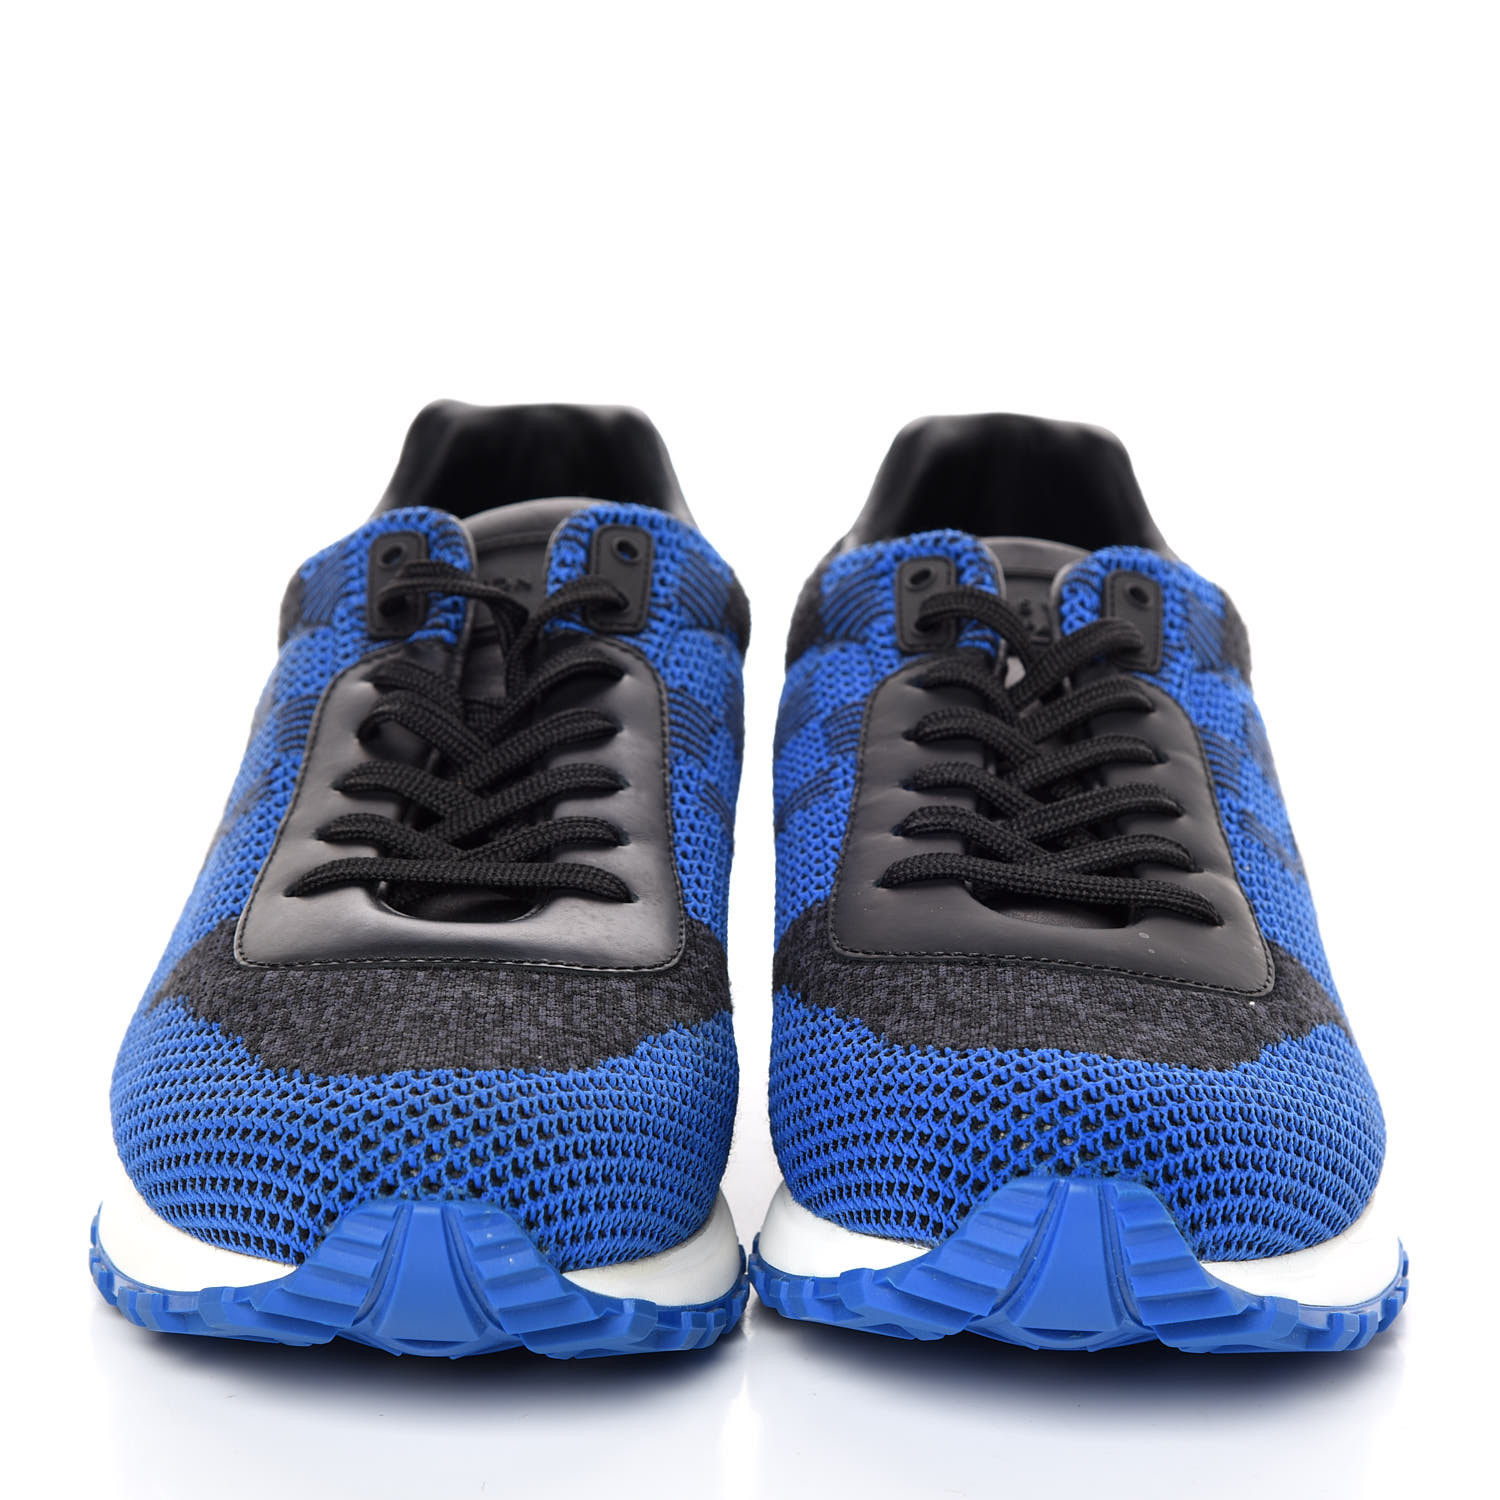 LOUIS VUITTON Damier Calfskin Mens Run Away Sneakers 7.5 Blue 383560